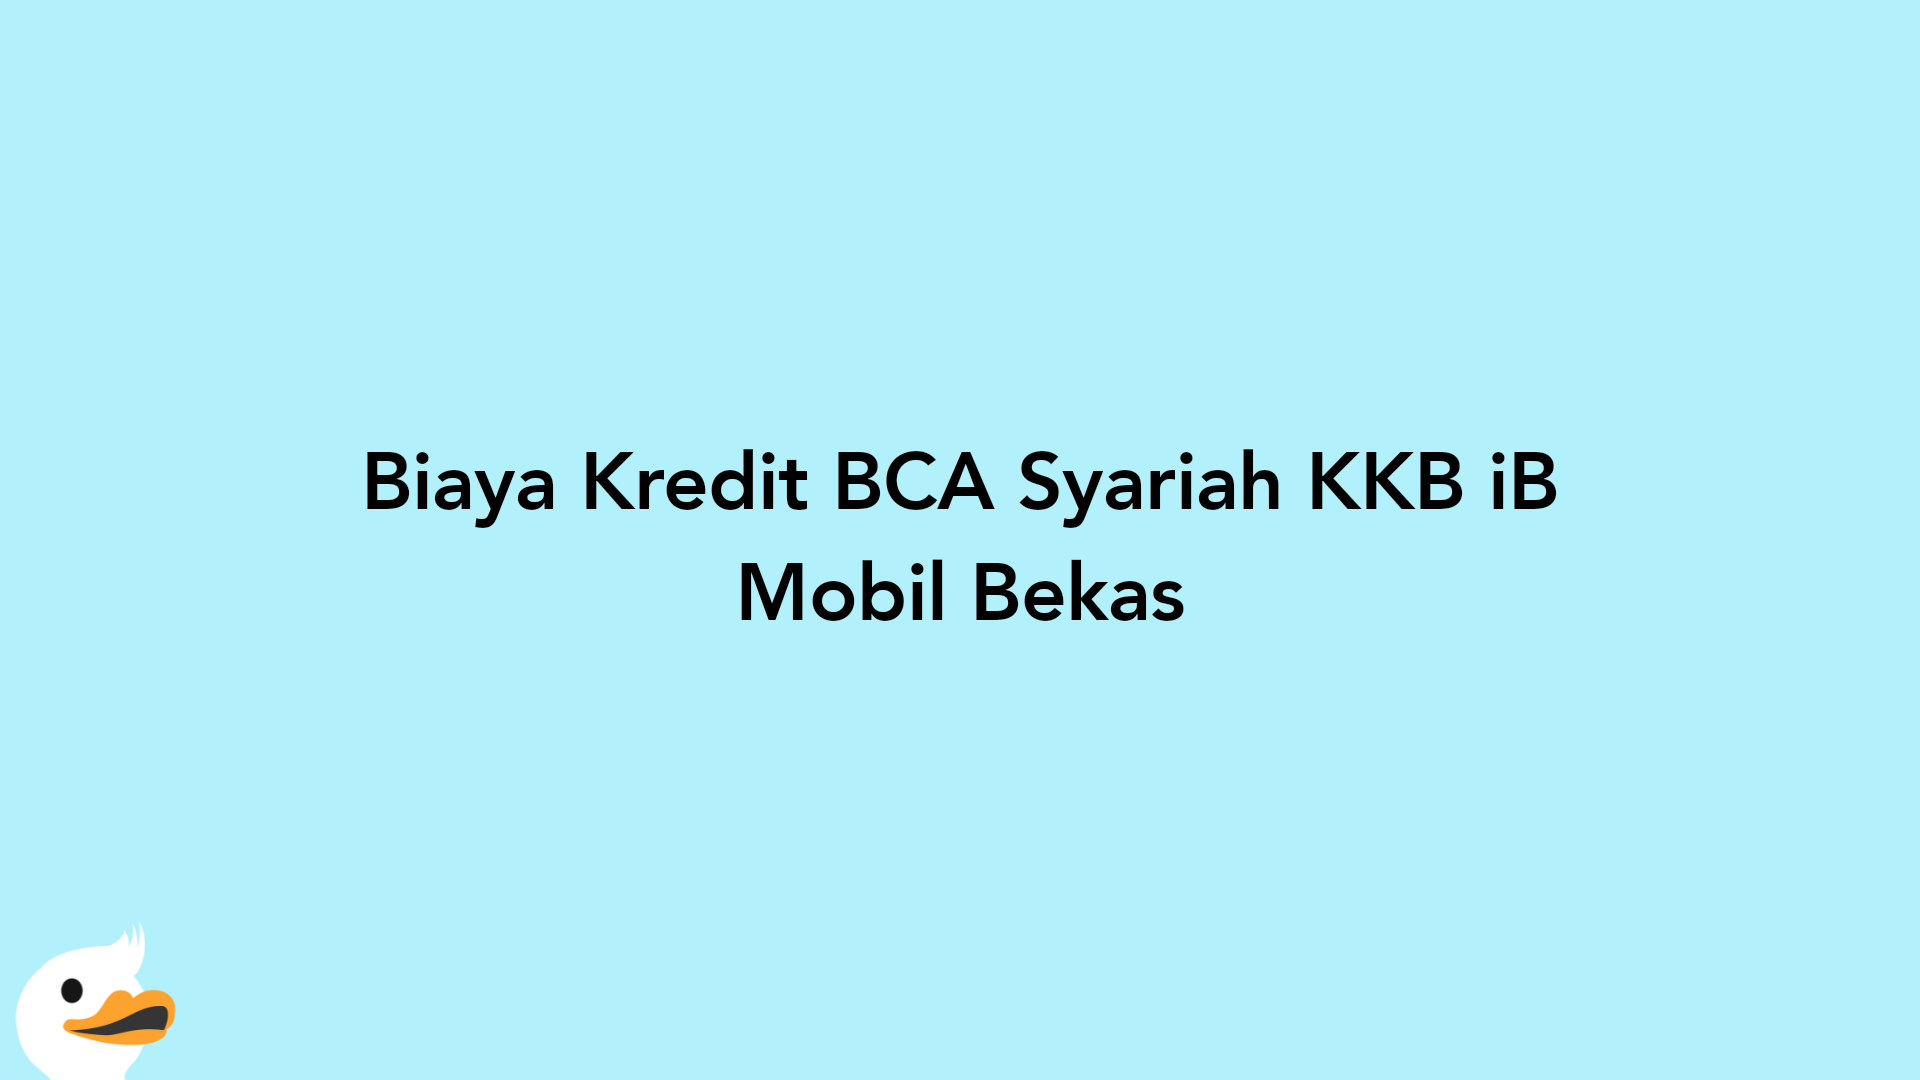 Biaya Kredit BCA Syariah KKB iB Mobil Bekas